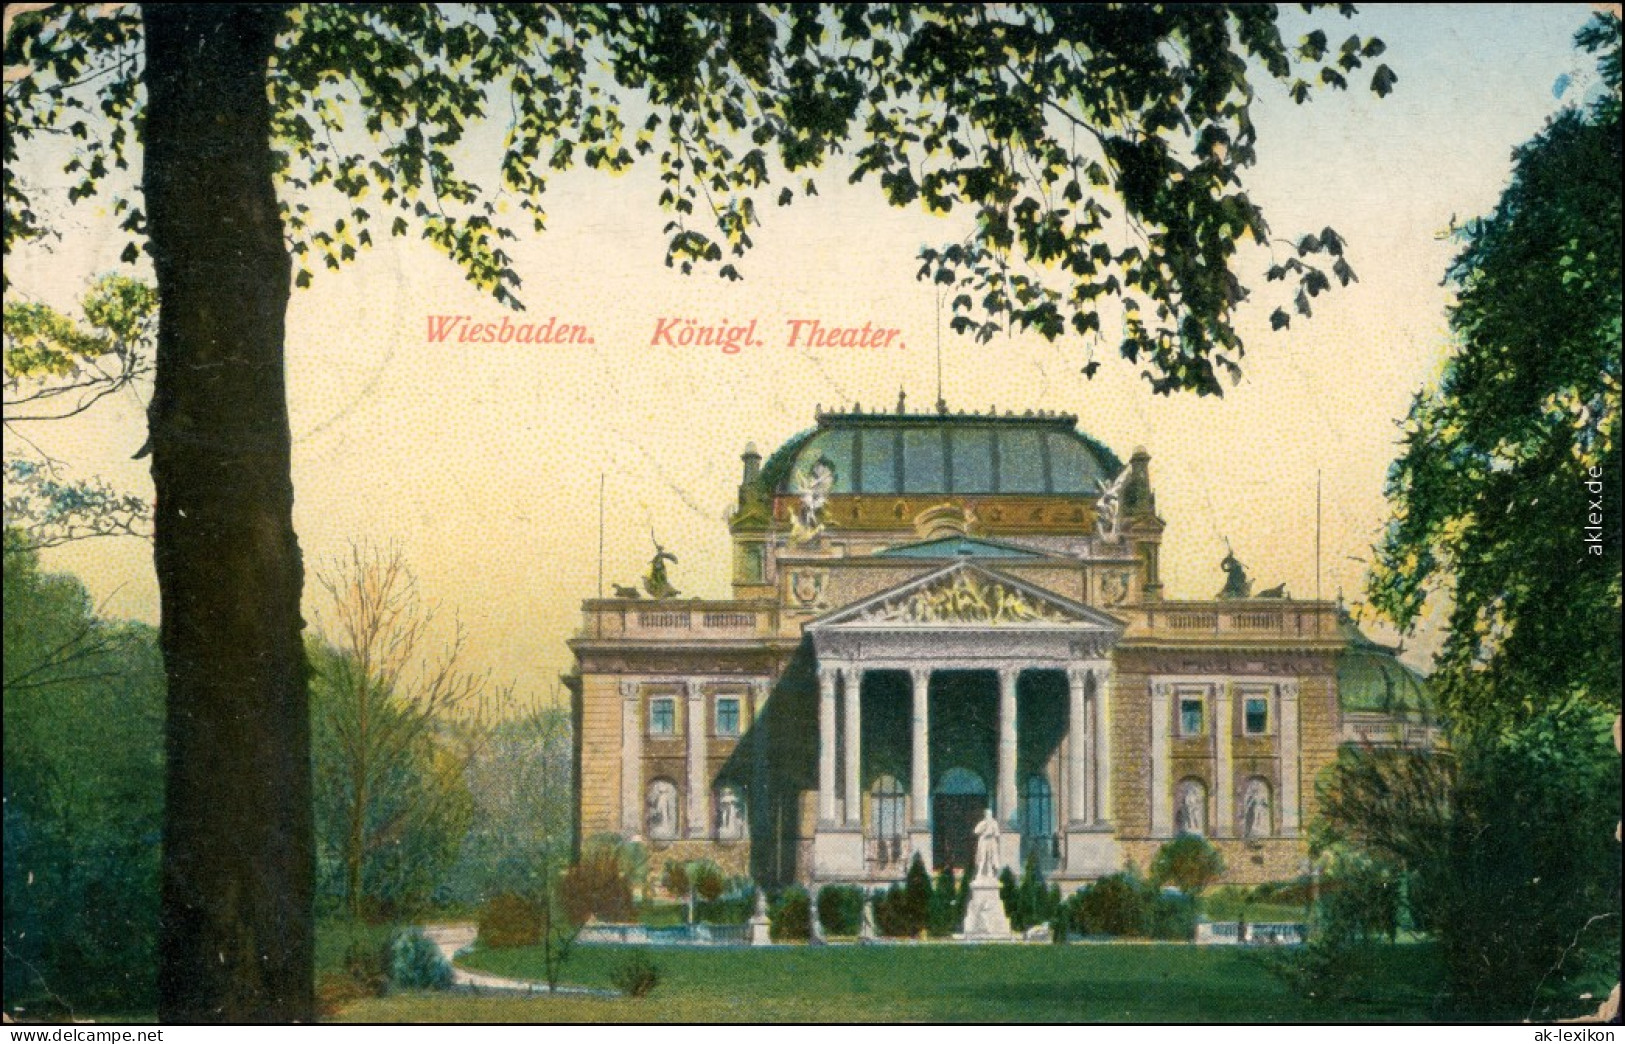 Wiesbaden Hessisches Staatstheater (königliches Hoftheater) 1917 - Wiesbaden